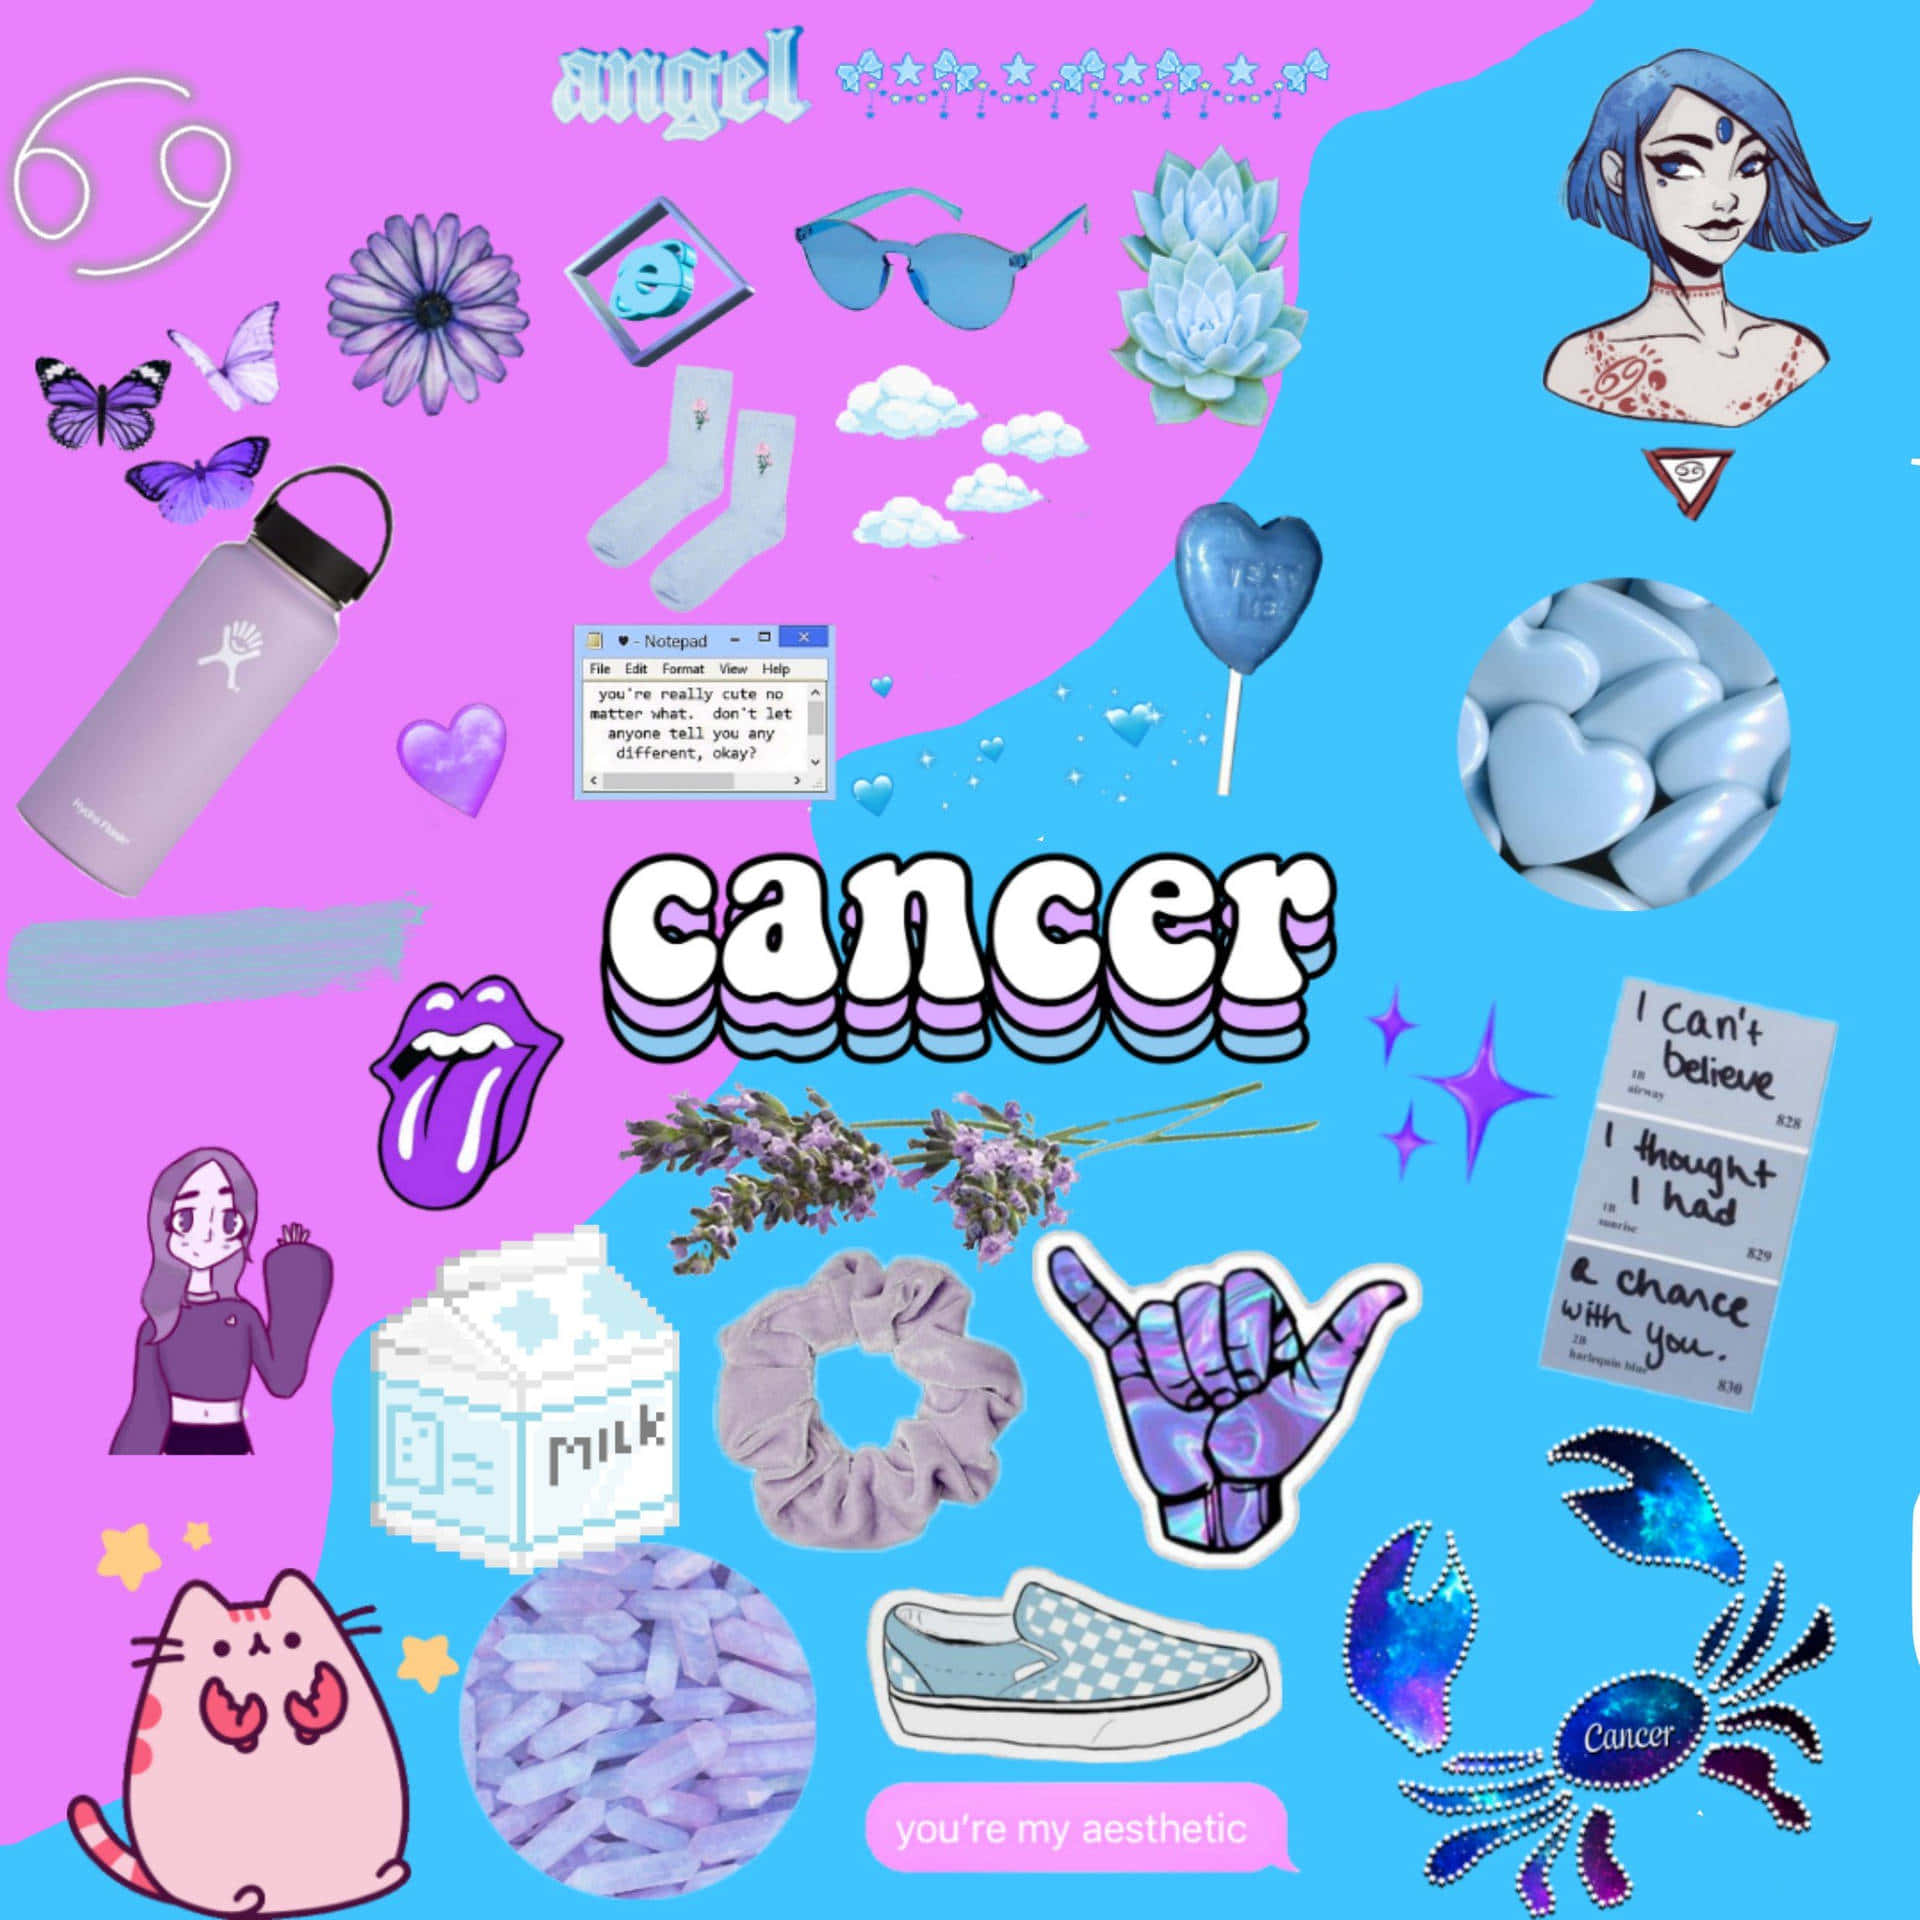 Krebseine Rosa- Und Blaufarbene Collage Mit Verschiedenen Gegenständen. Wallpaper